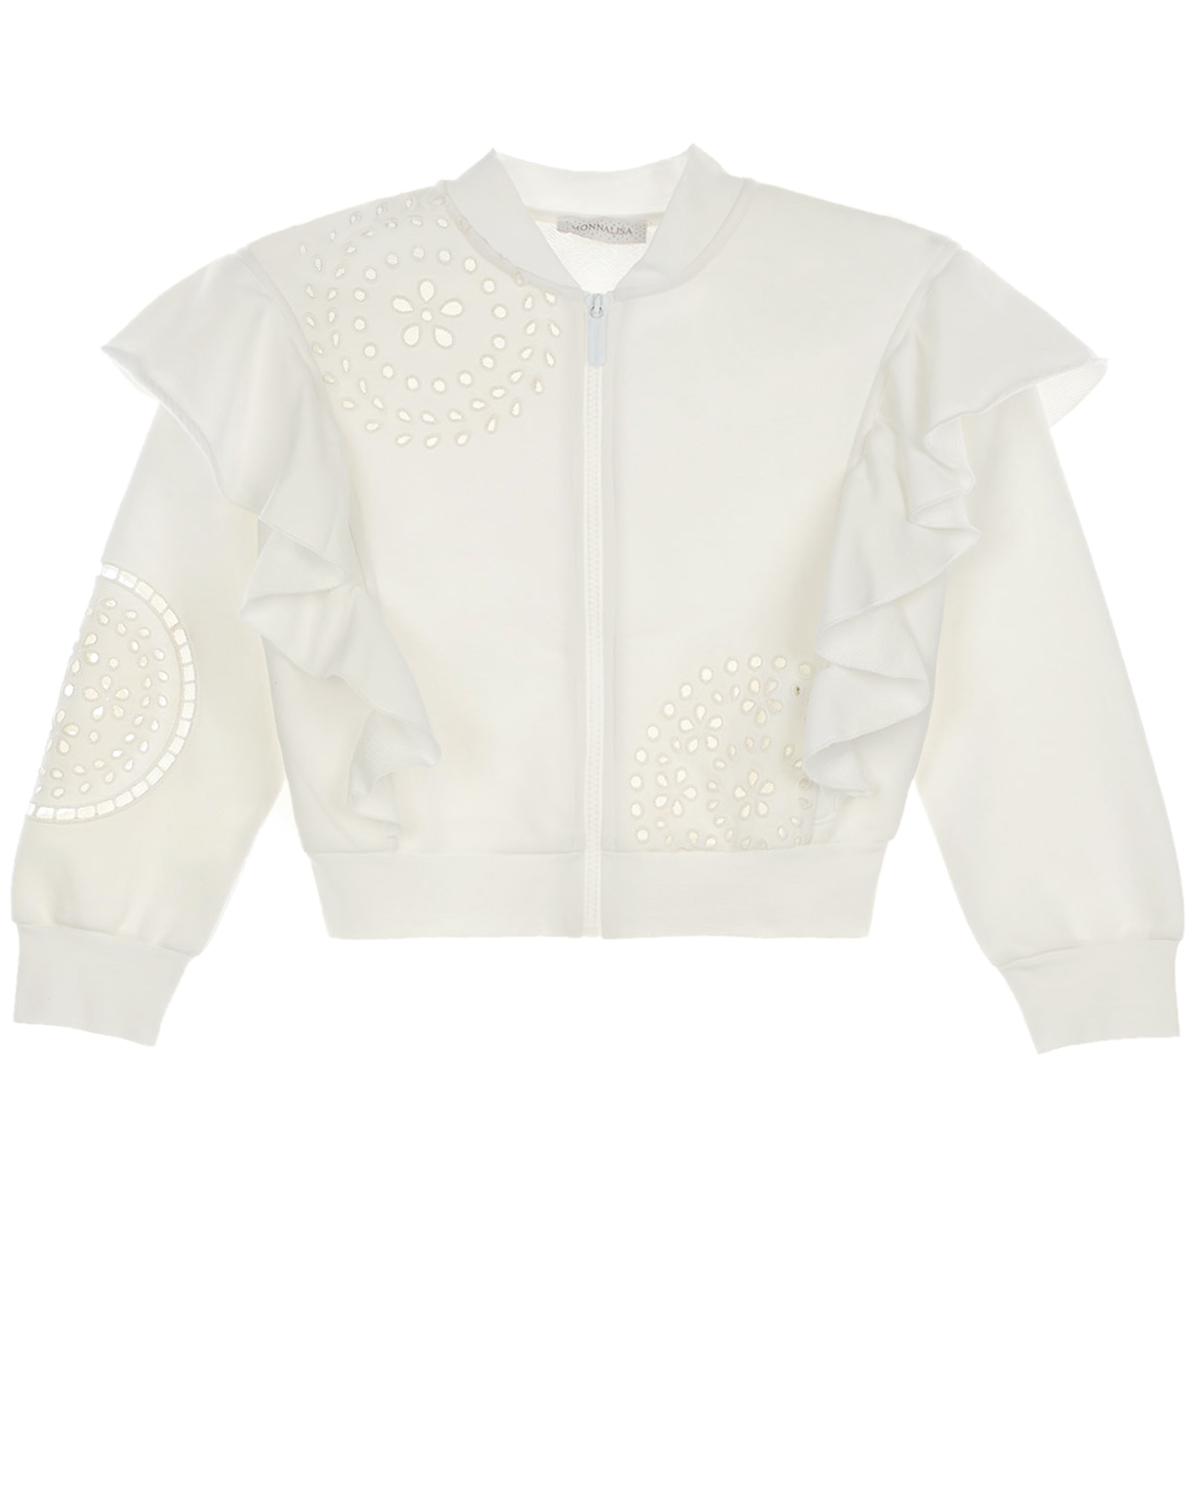 Спортивная куртка с воланами на рукавах Monnalisa детская, размер 116, цвет белый